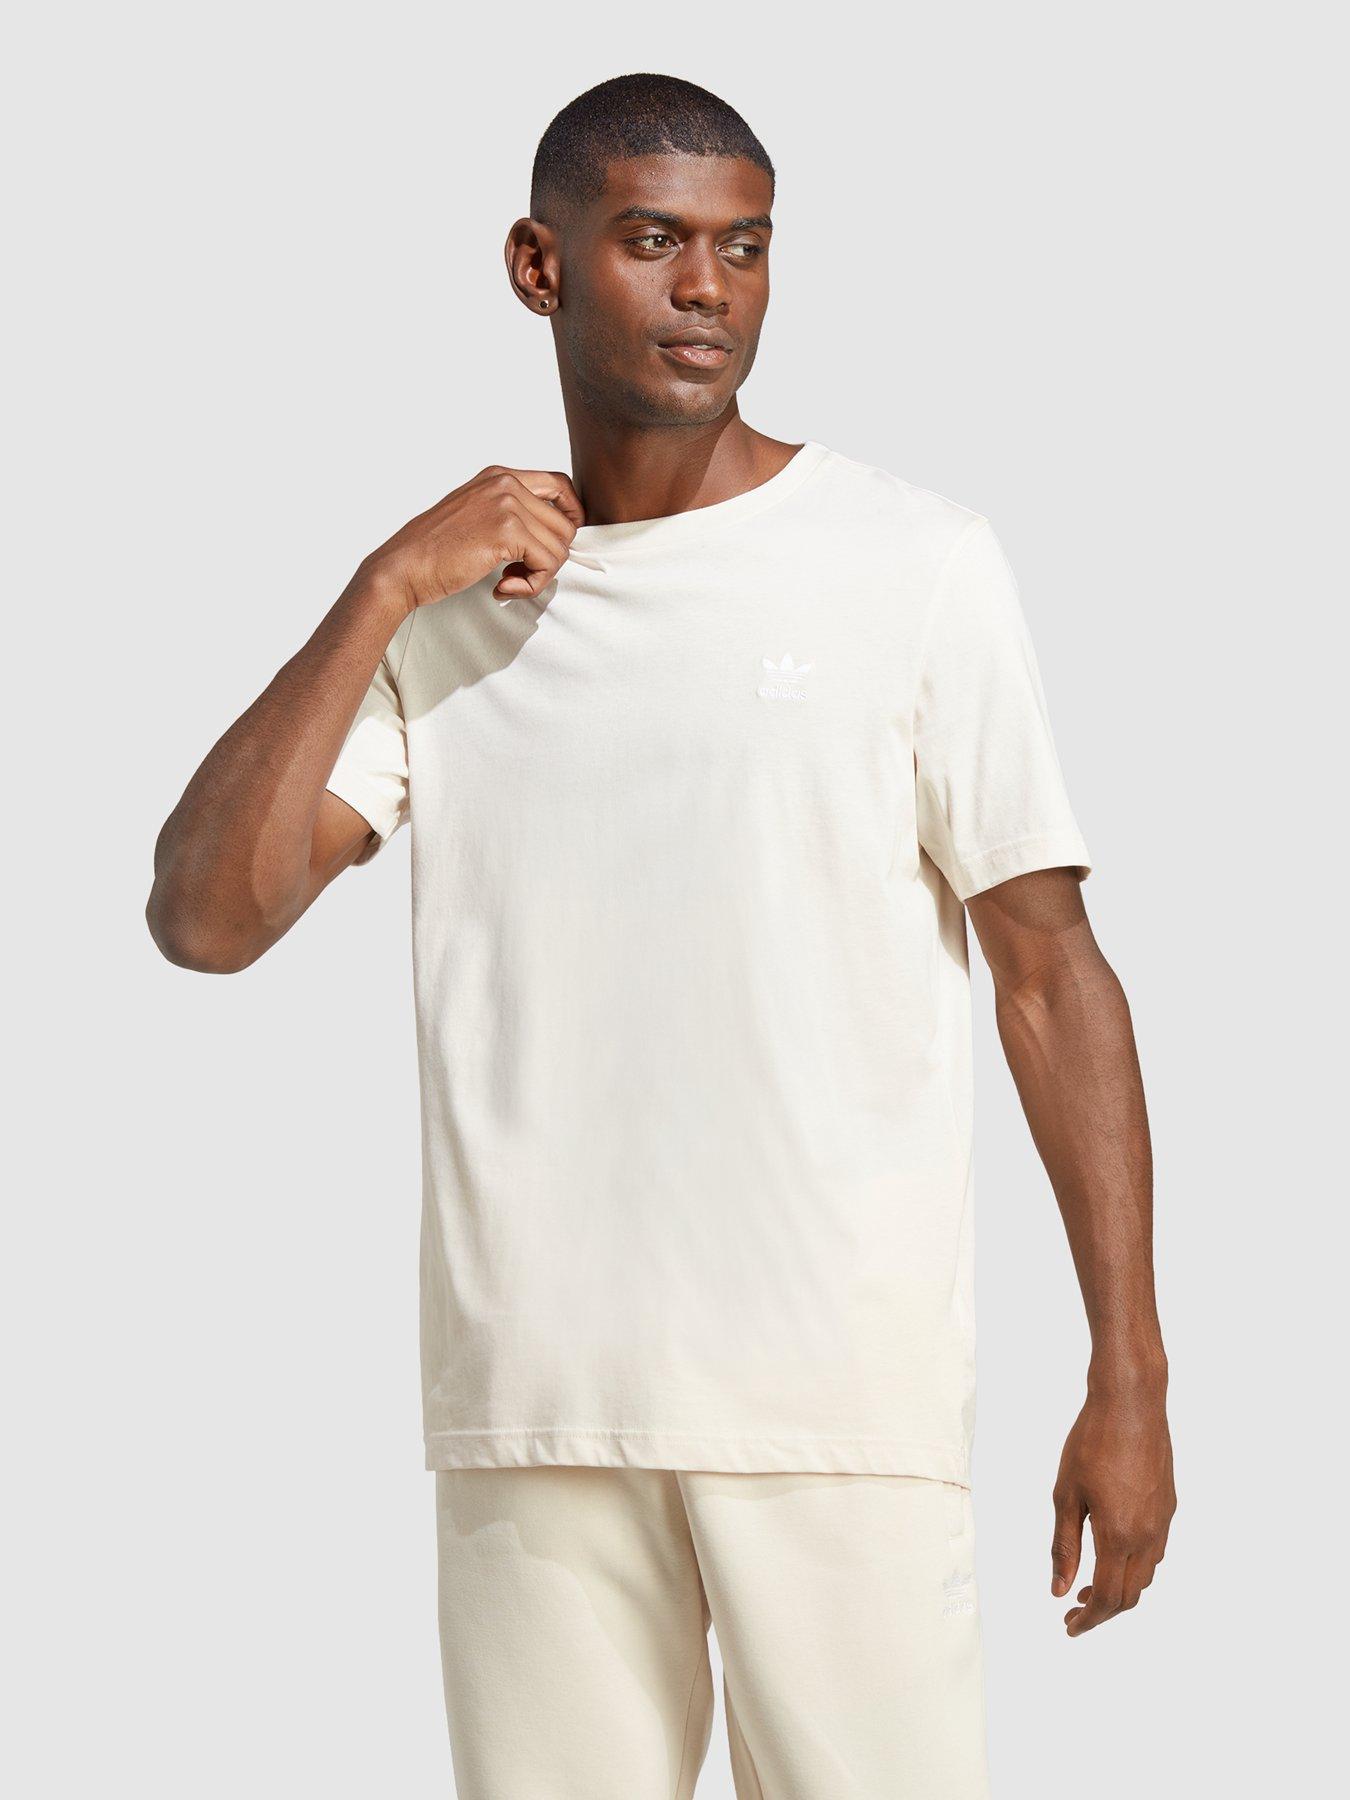 Adidas Originals t-shirts for Men